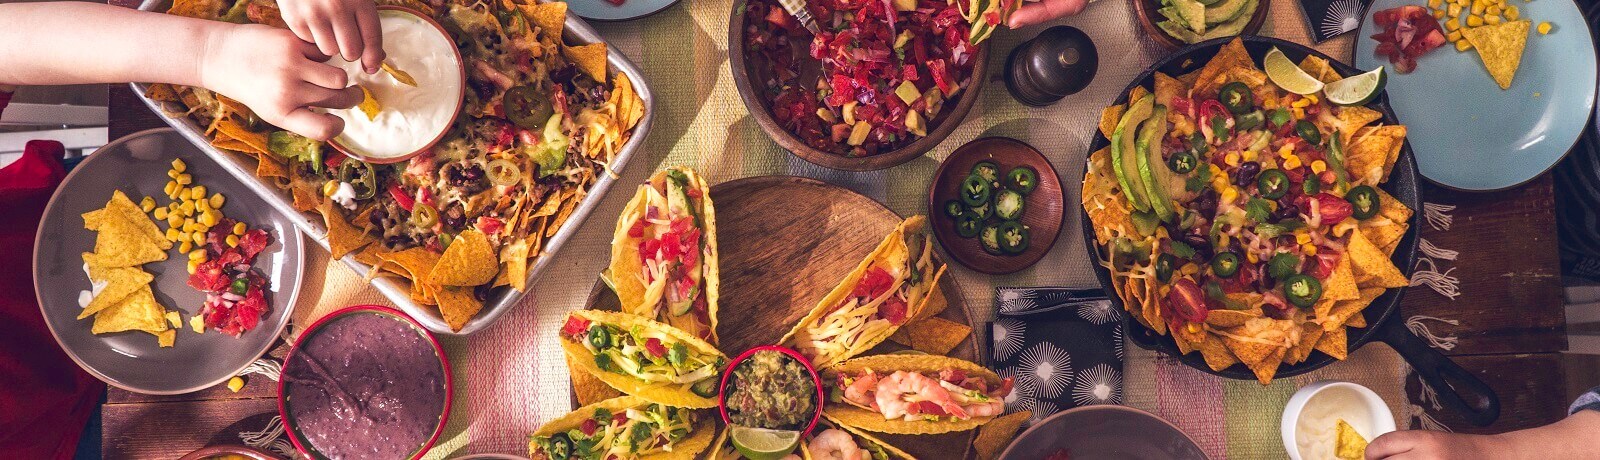 Die farbenfrohe kulinarische Vielfalt Mexikos